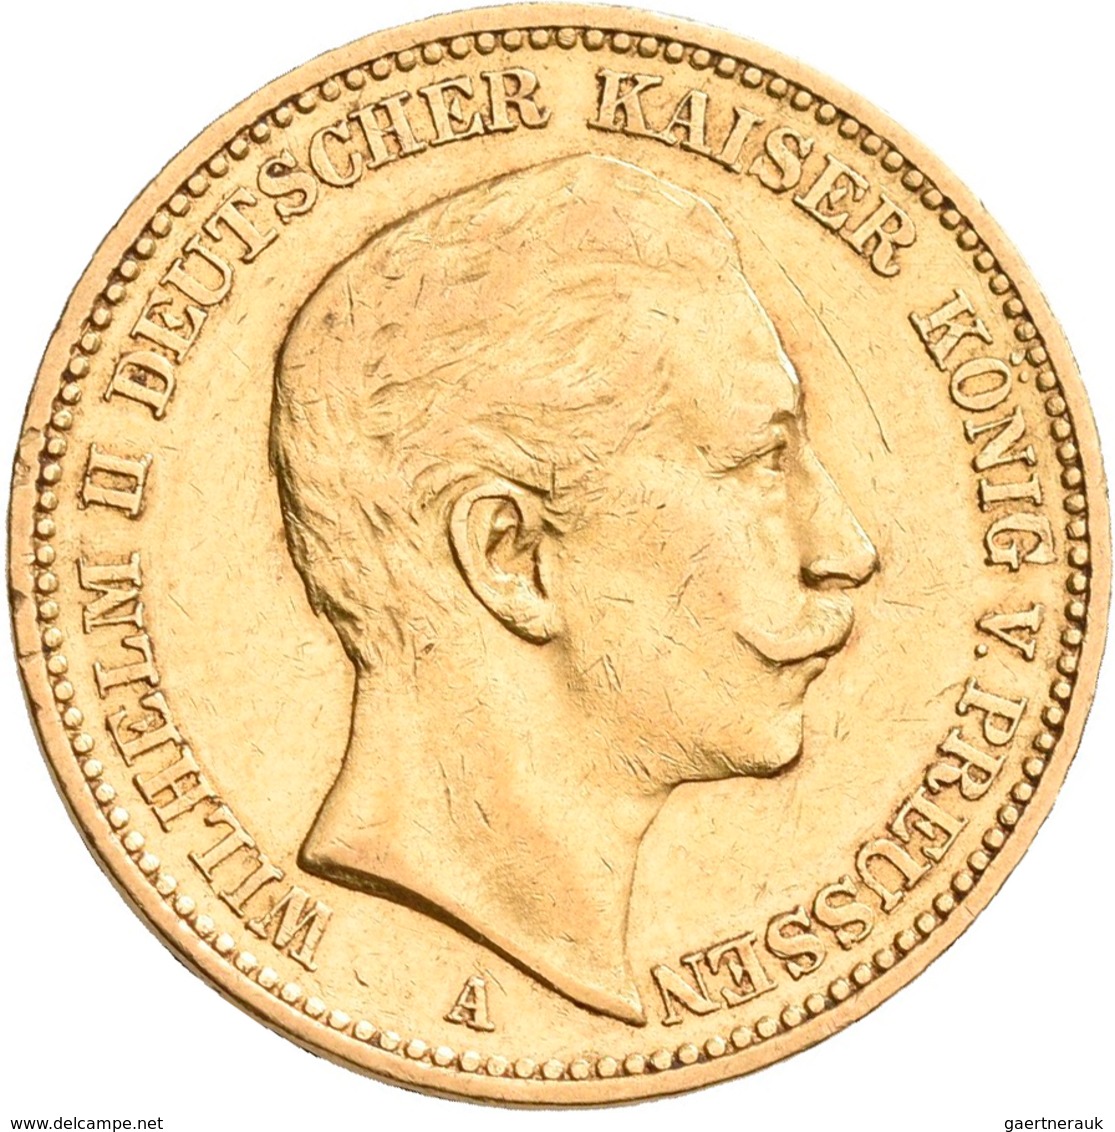 Preußen: Wilhelm II. 1888-1918: Lot 16 Goldmünzen zu 20 Mark aus den Jahren 1894 - 1911. Jaeger 252.